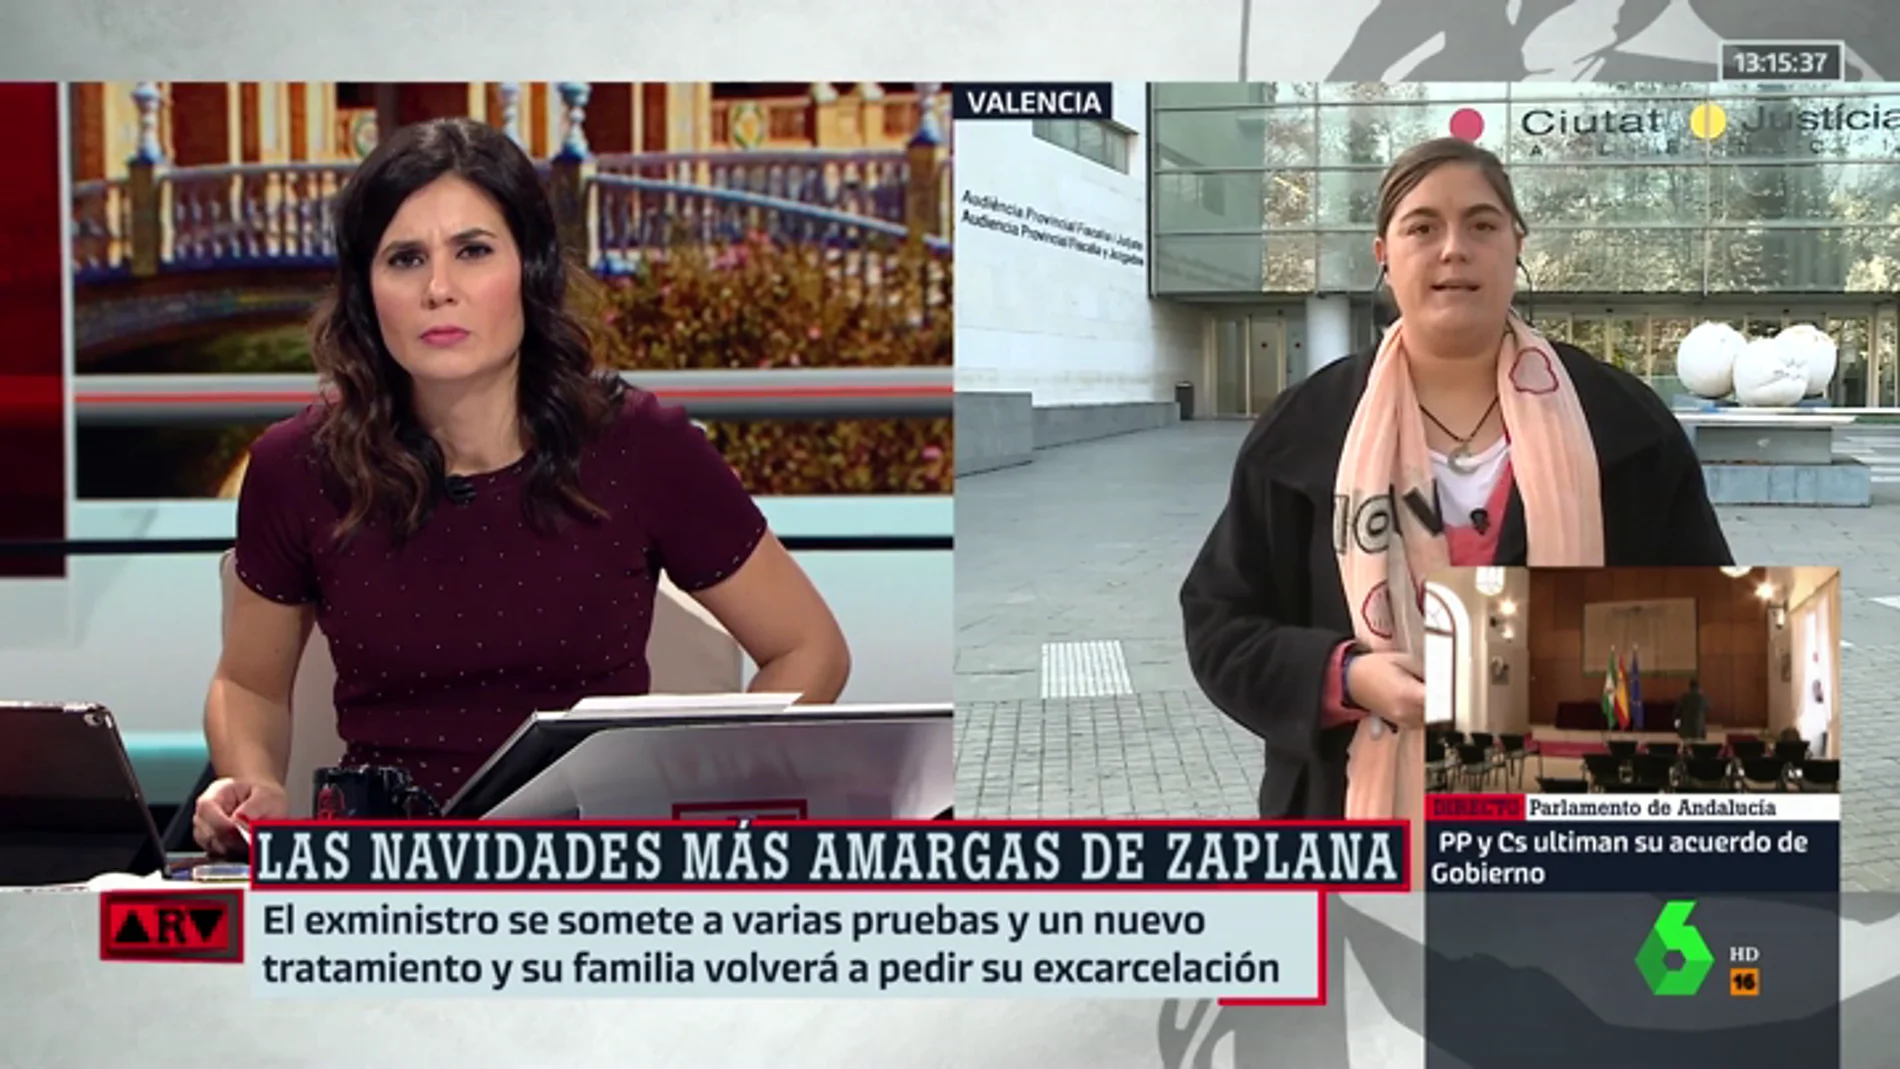 Loreto Ochando: "La juez mantiene una postura poco humana con Zaplana. El informe médico es lapidario, pone los pelos de punta"